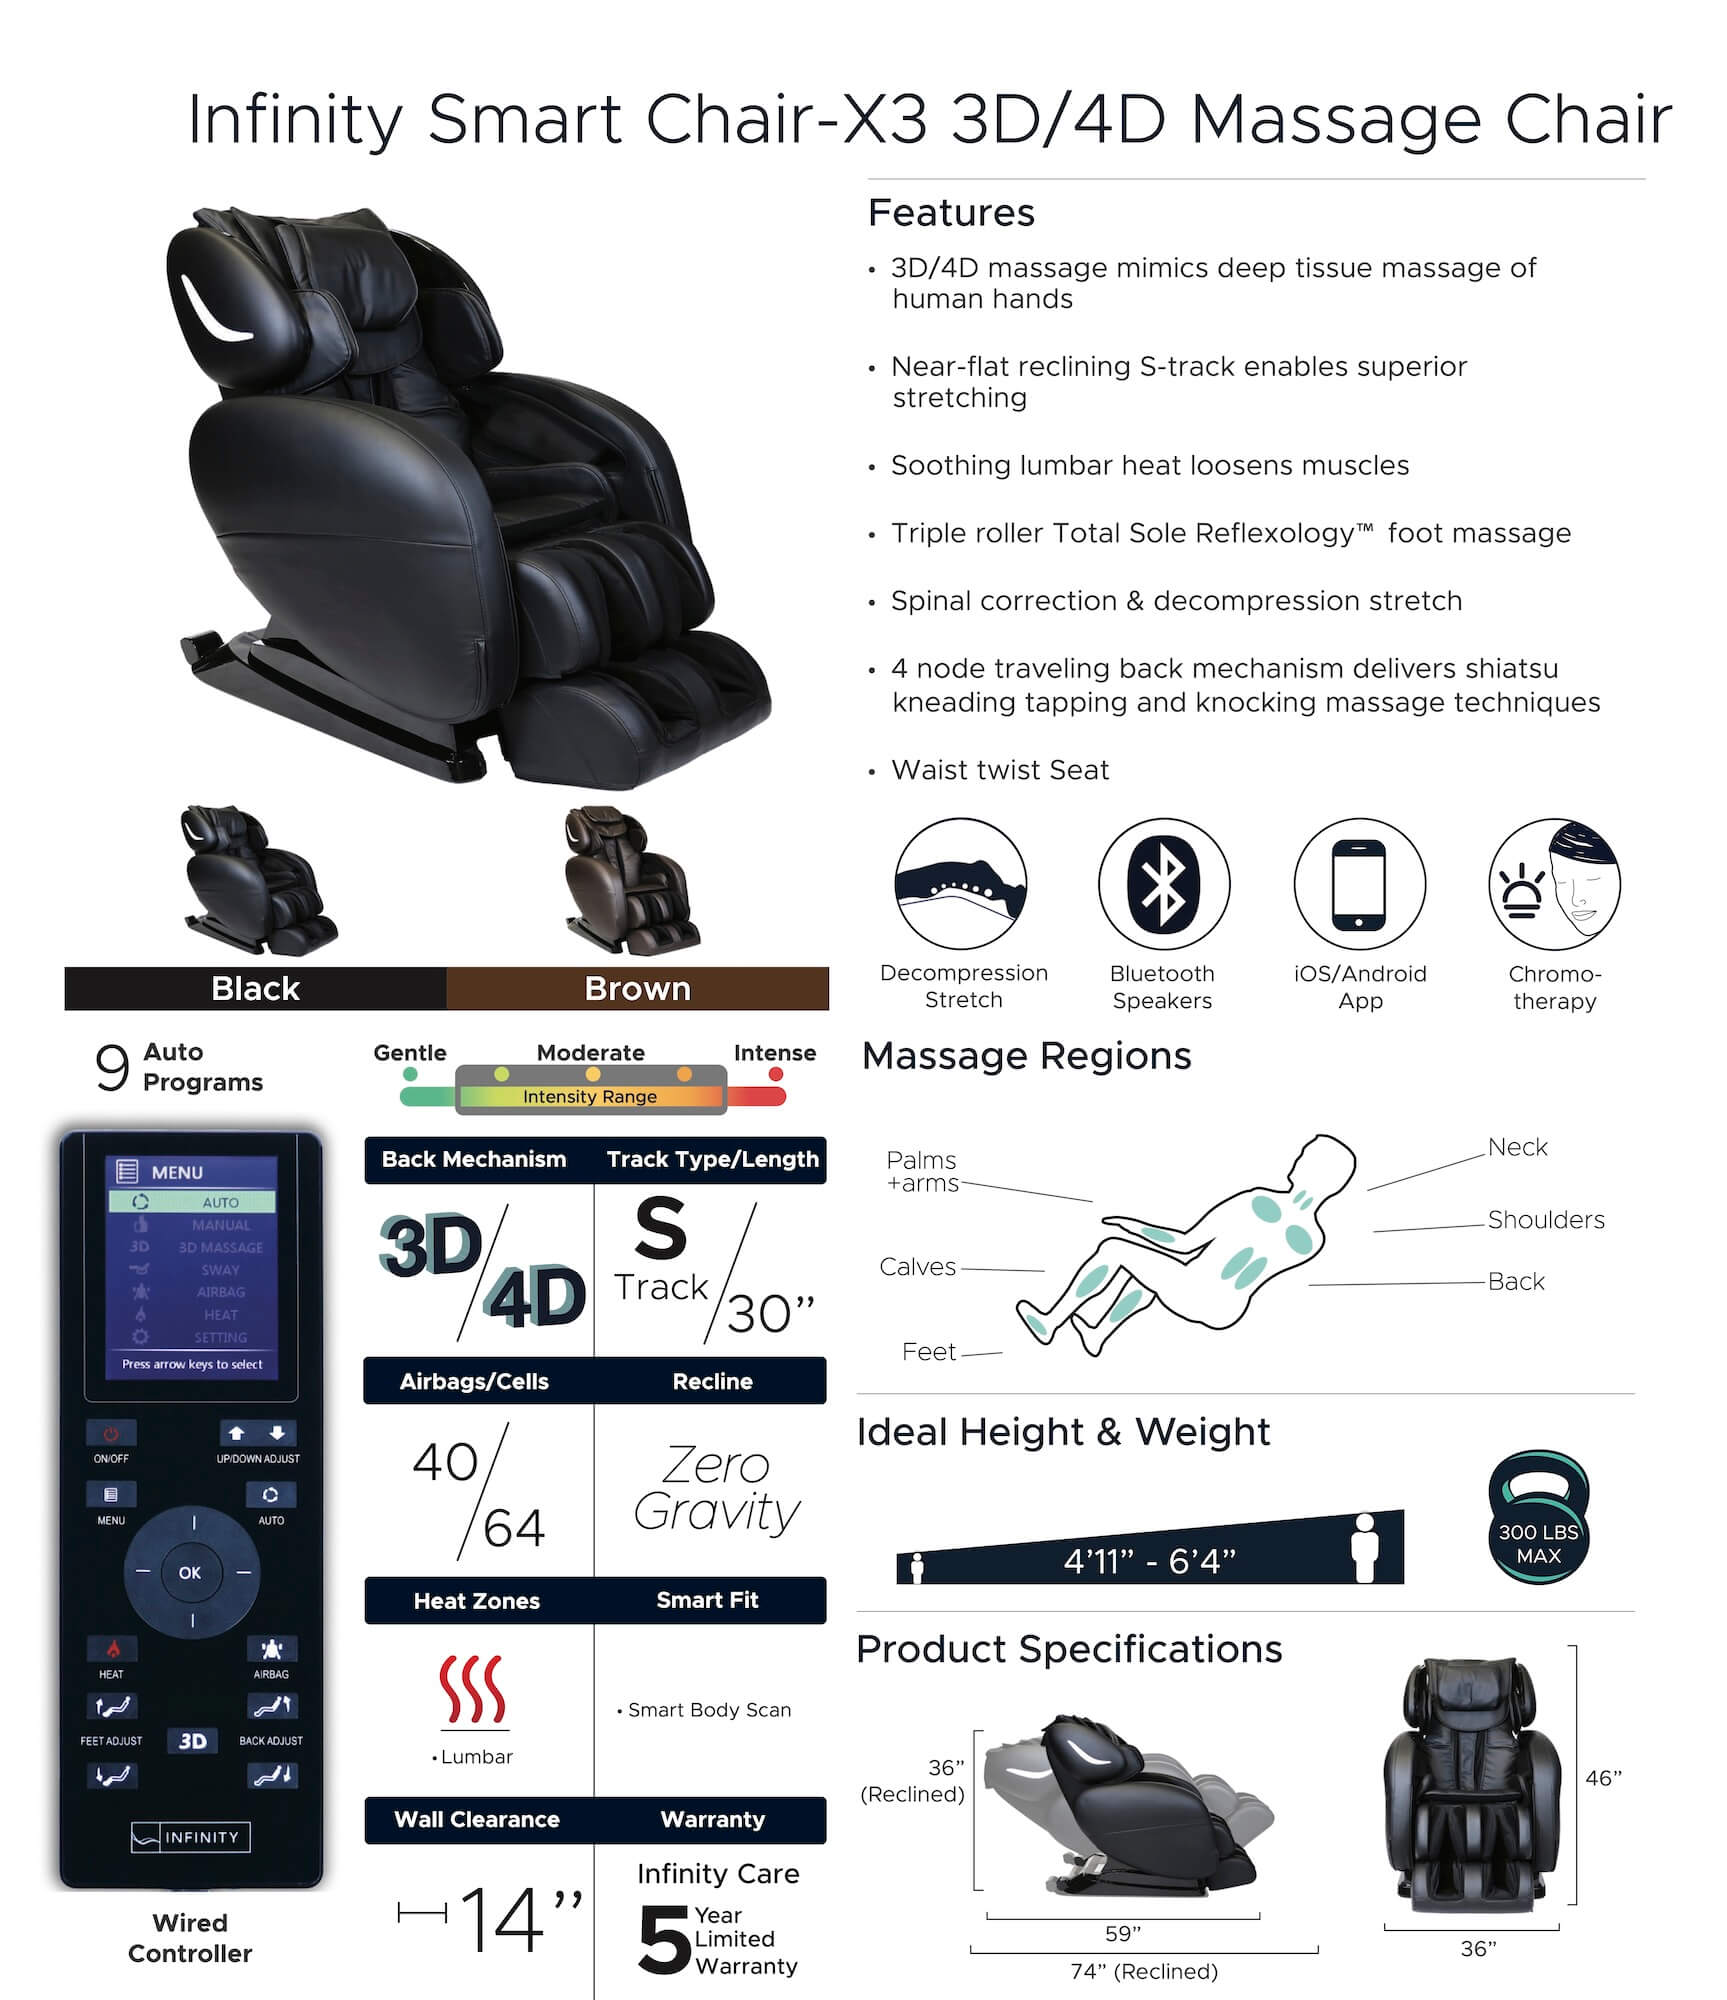 Infinity Smart Chair X3 Massage Chair 3D/4D Spec Sheet